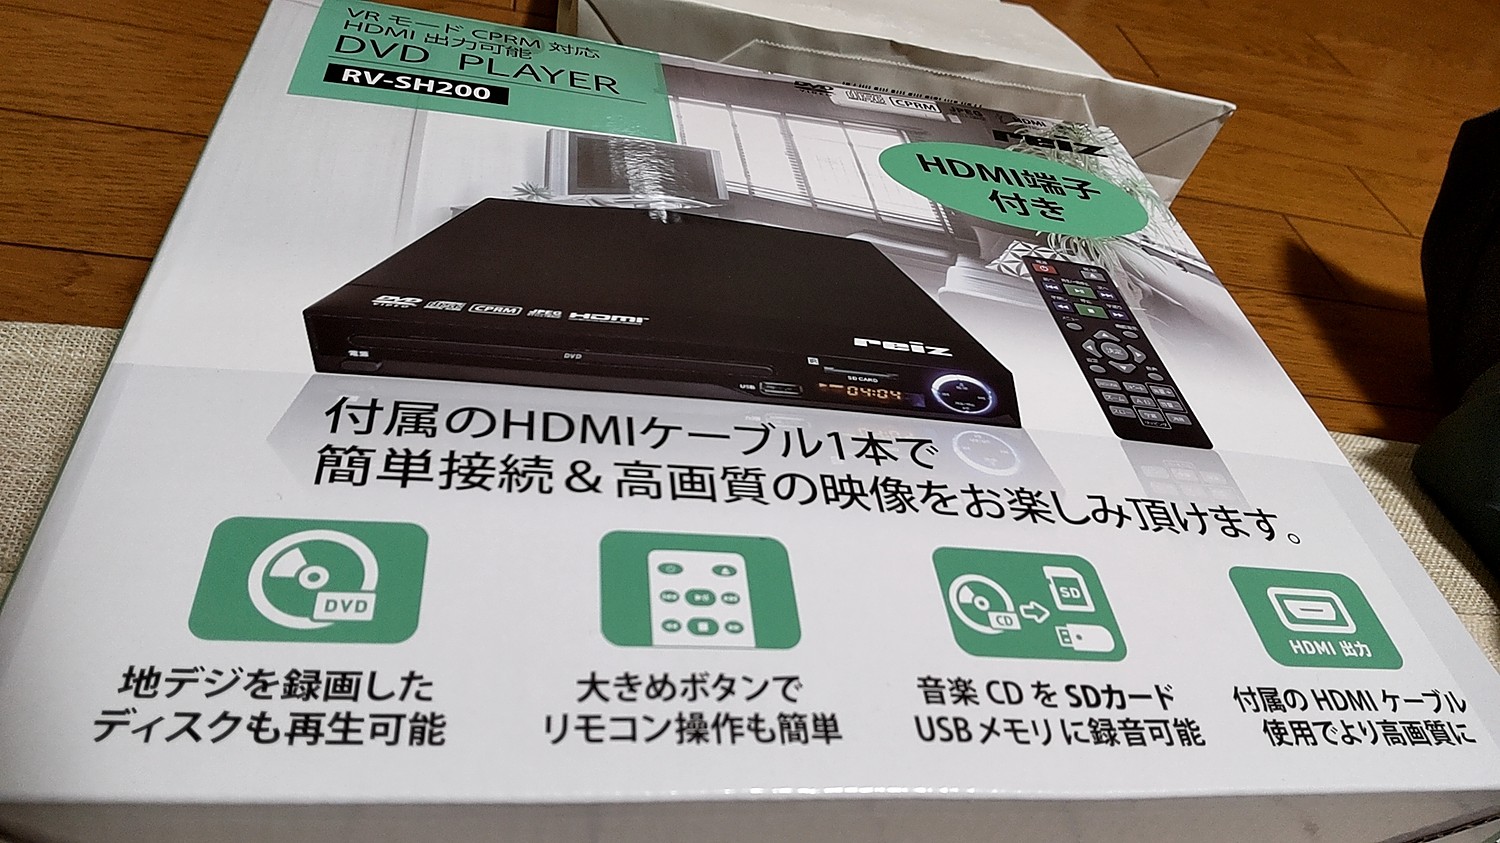 (外装箱にキズあり特価！本体は新品です) Reiz（レイズ）高画質 HDMI端子搭載DVDプレーヤー 国内メーカー直販で安心購入 1年保証｜RV-SH200